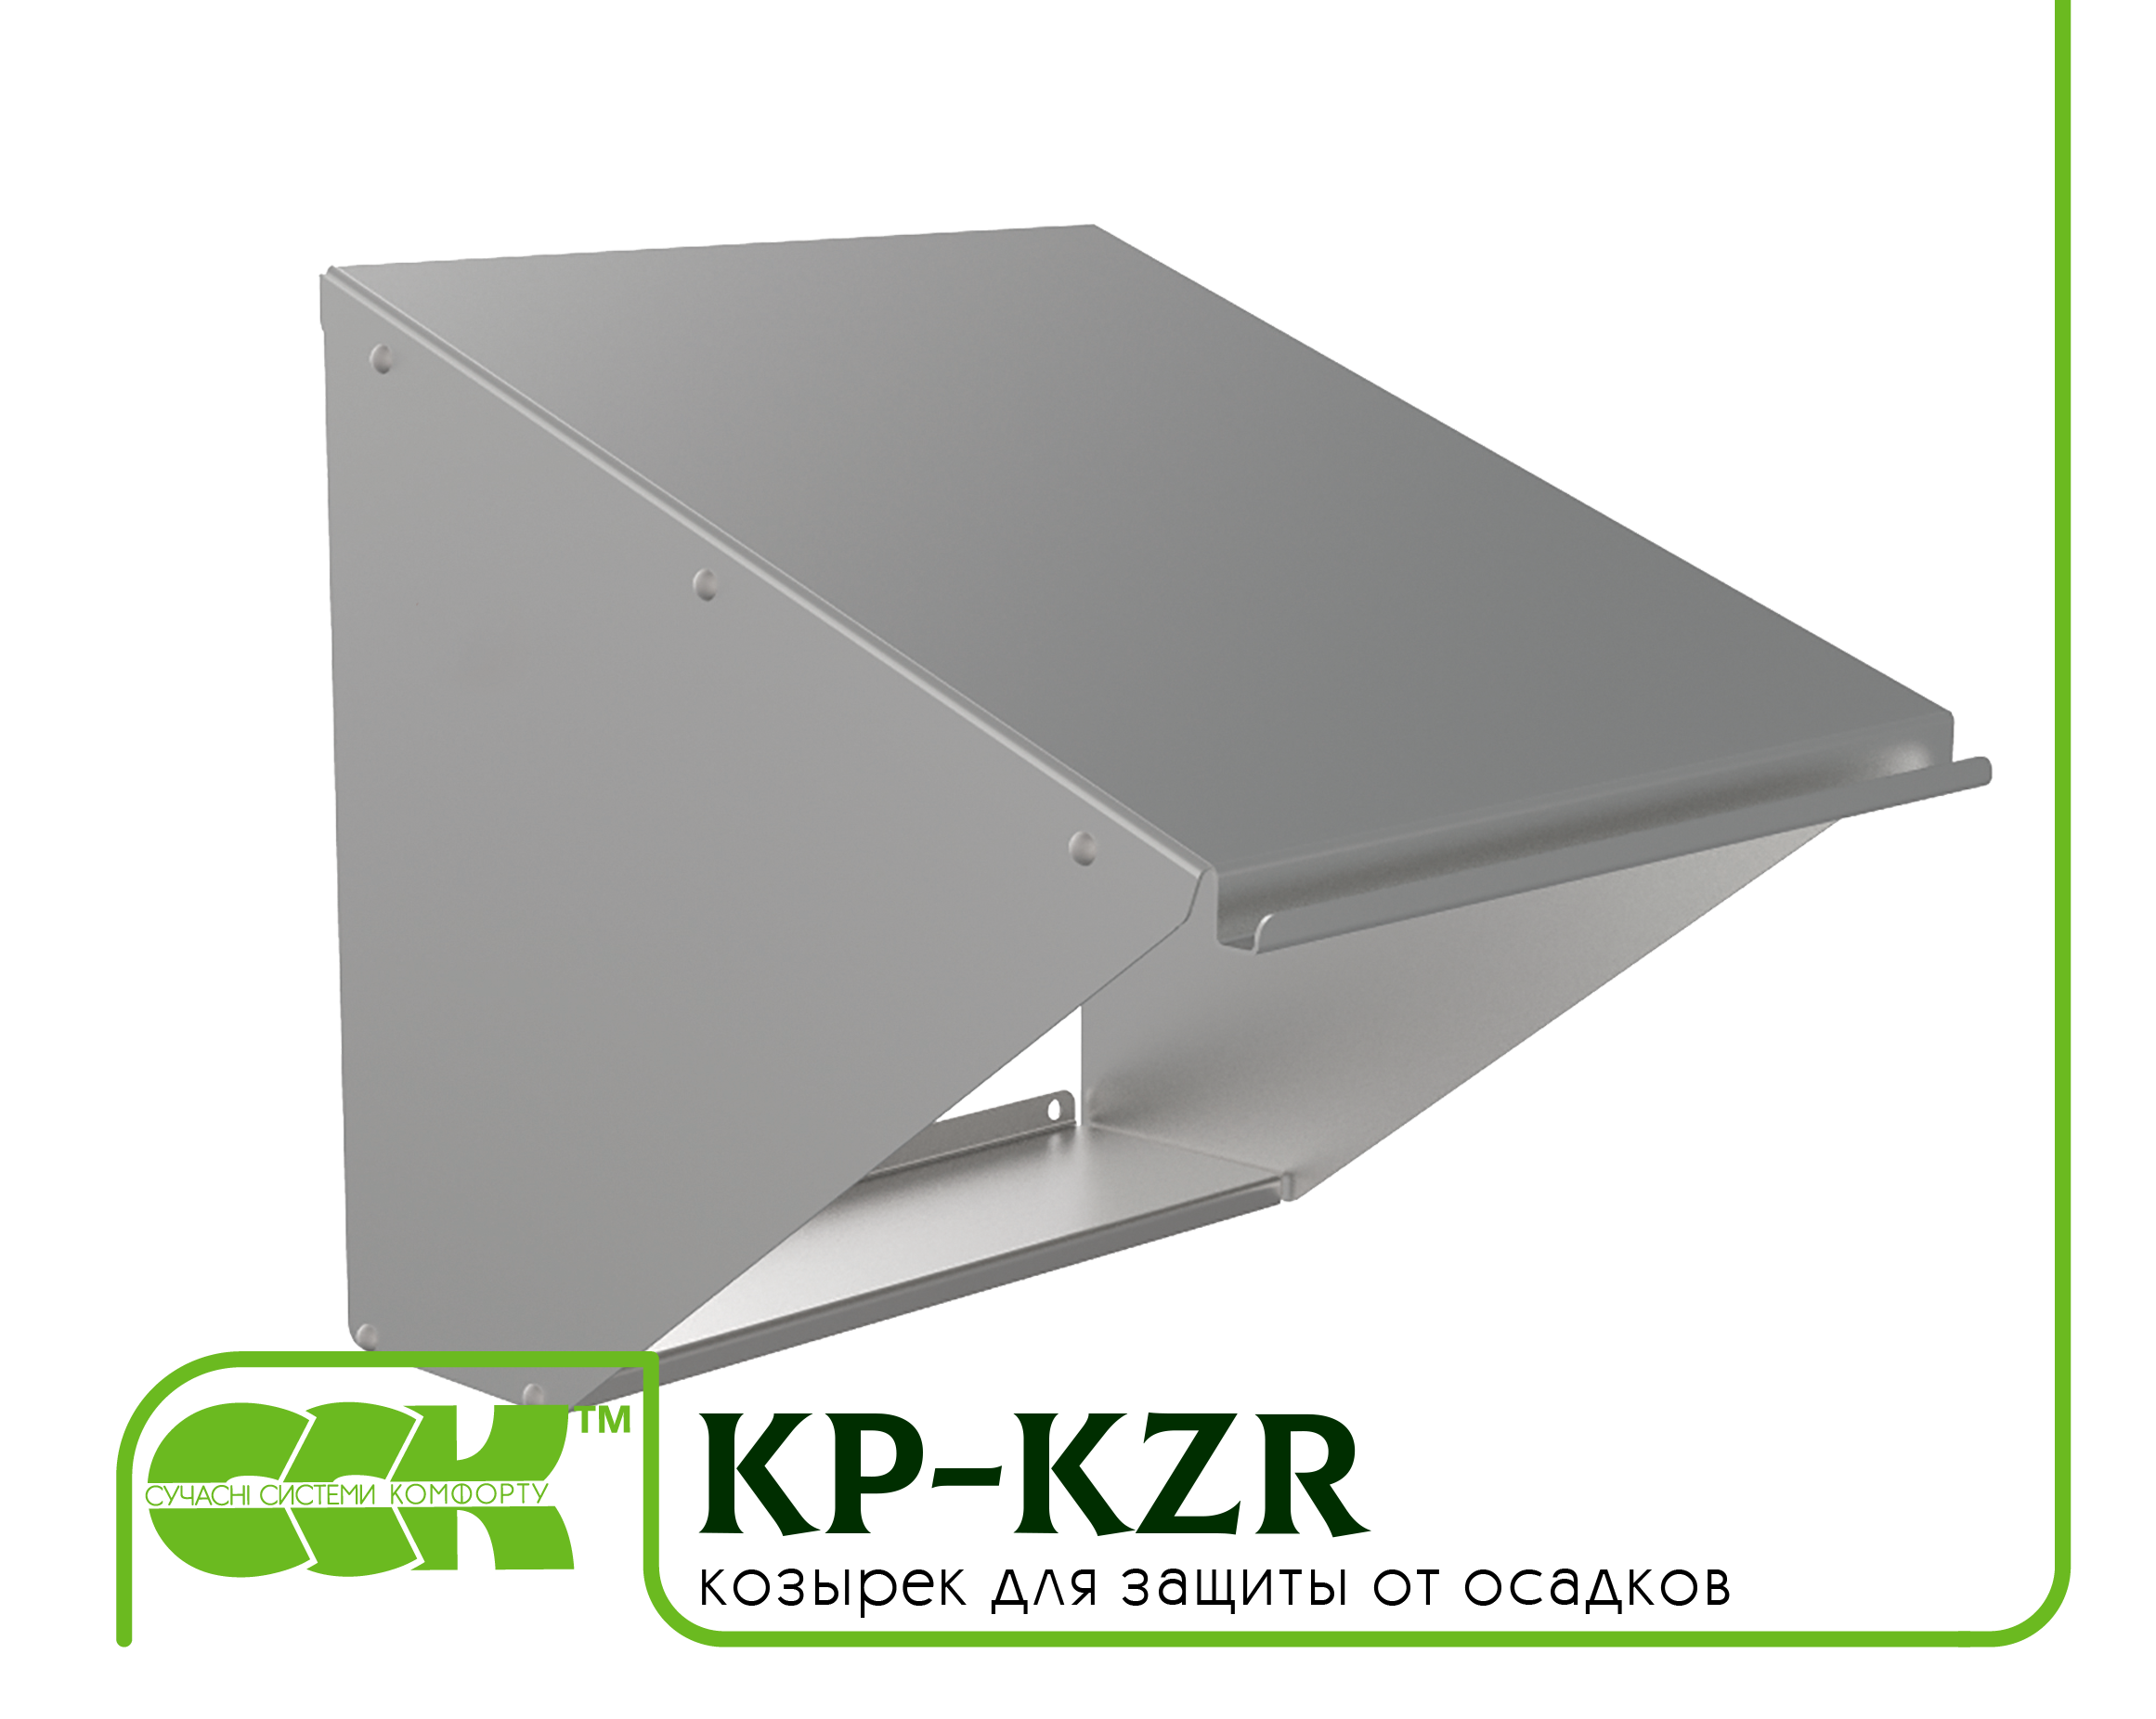 Козырек для защиты вентилятора KP-KZR-40-40